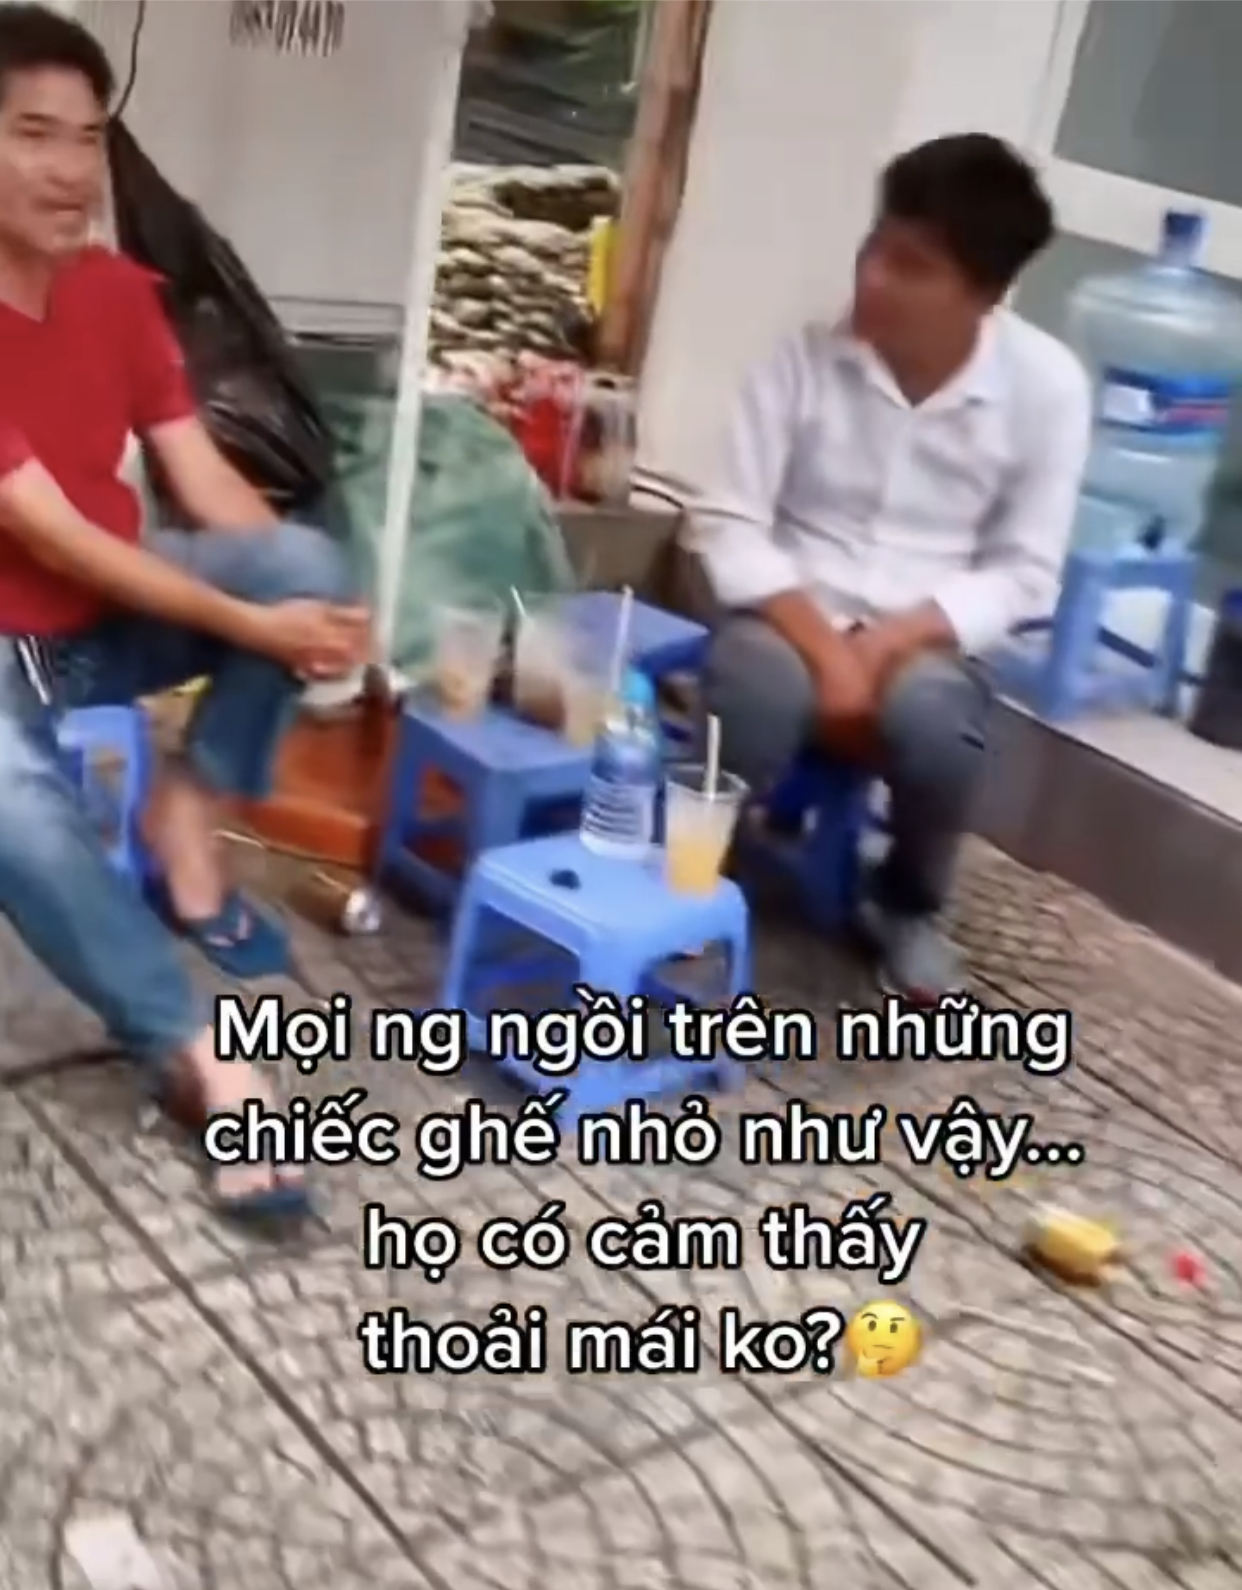 Những điều bình thường ở Việt Nam nhưng lại khiến du khách nước ngoài ngạc nhiên trong lần đầu trải nghiệm - Ảnh 9.